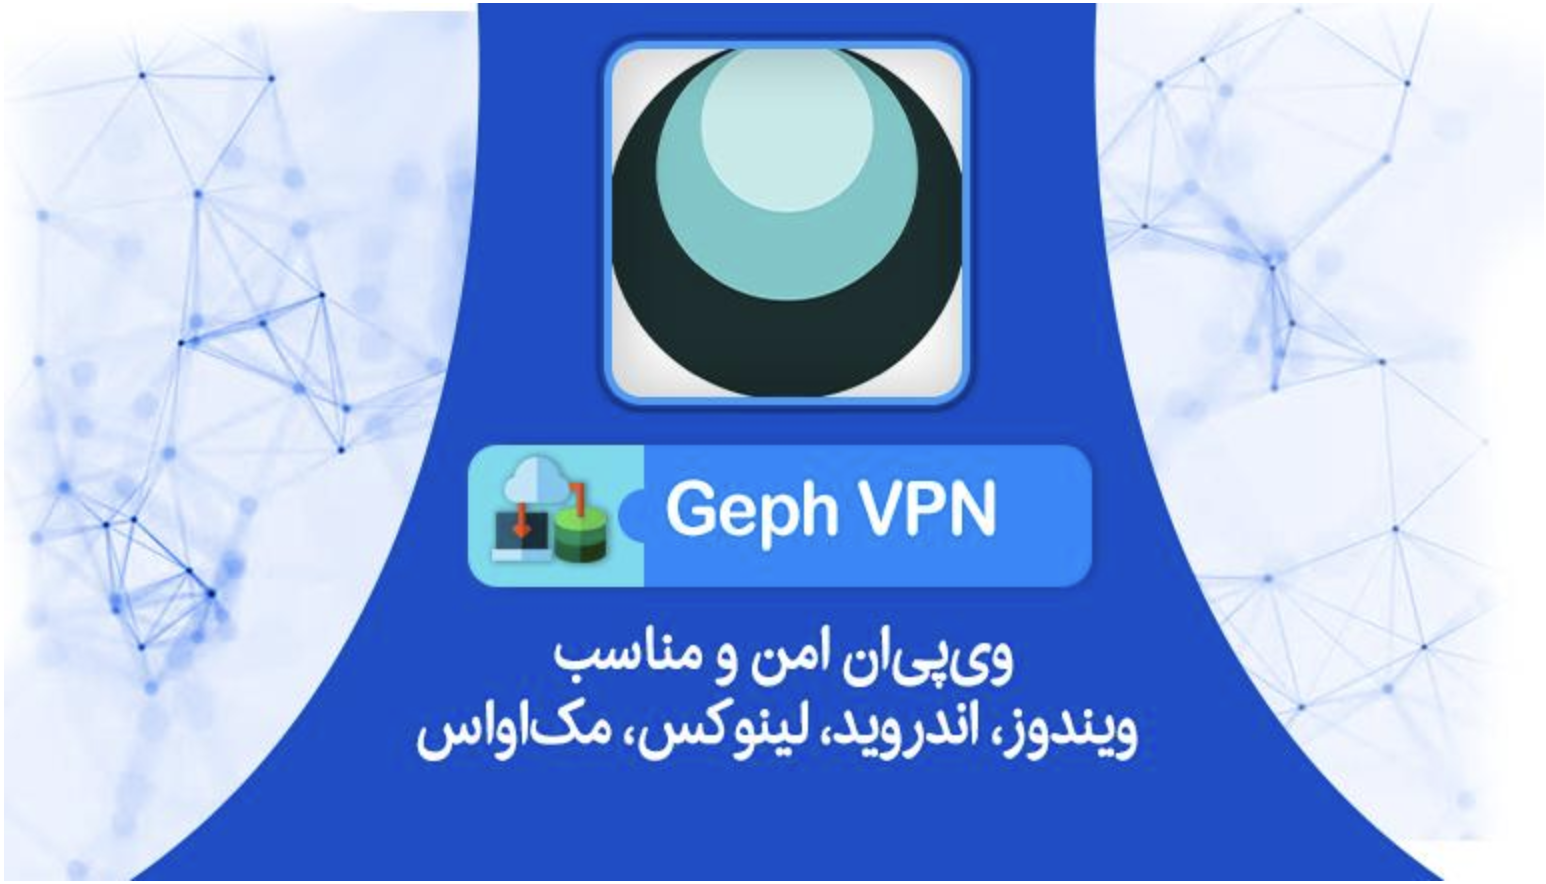 Geph VPN